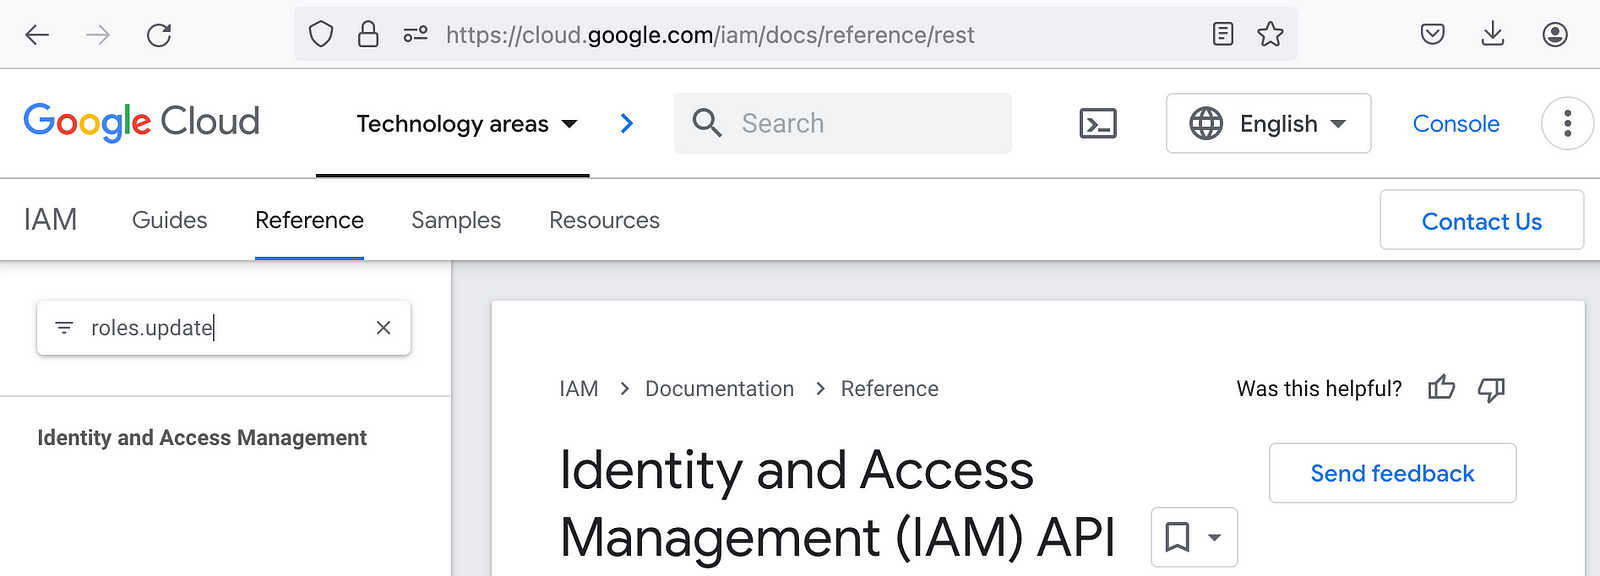 Ничего не найдено для “roles.update” в документации REST для сервиса IAM в Google Cloud.